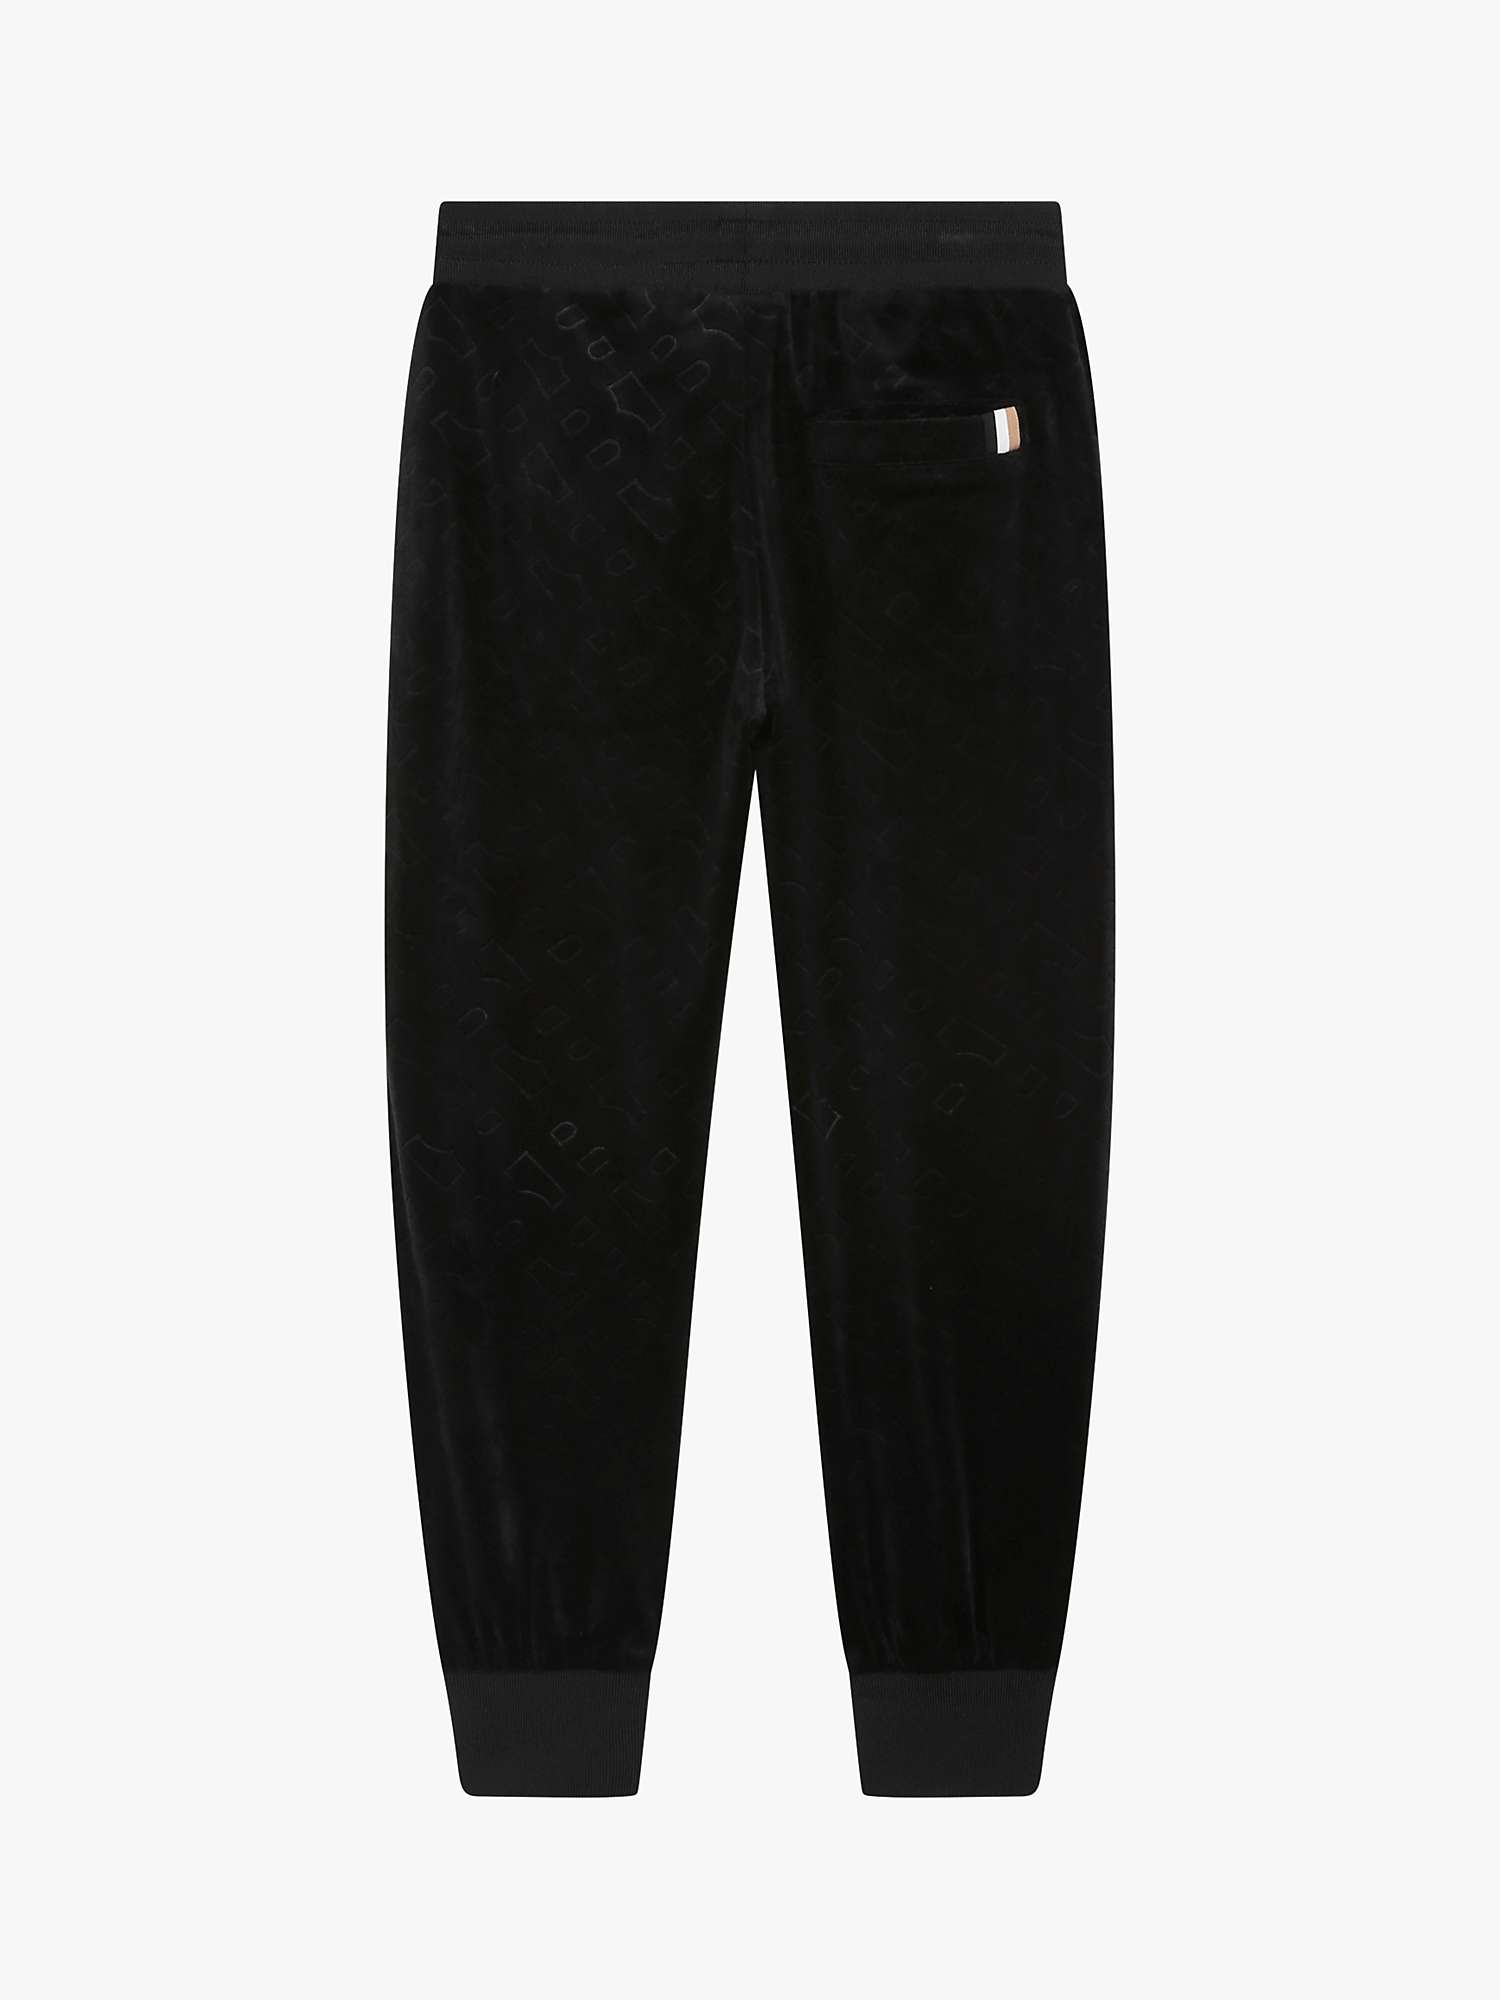 Buy BOSS Kids' Embossed 'B' Logo Velvet Trousers, Black Online at johnlewis.com